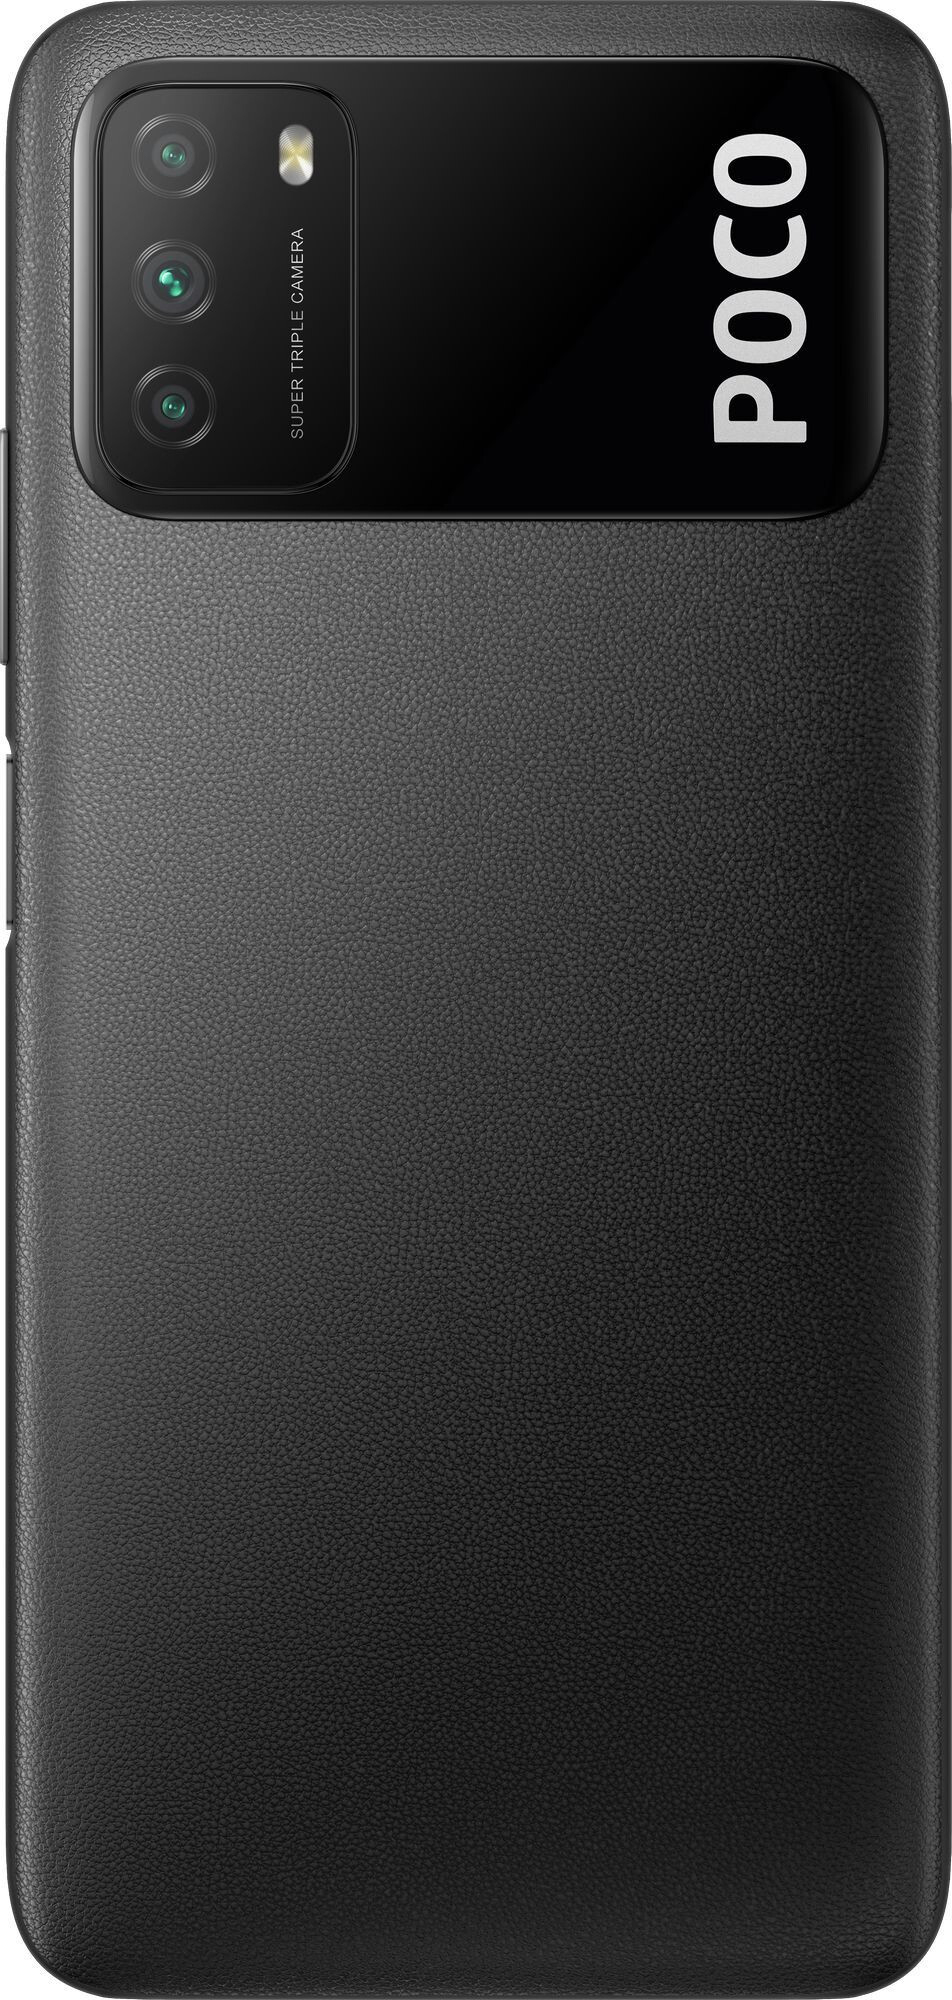 Смартфон Xiaomi Poco M3 4/64GB Black (Черный)